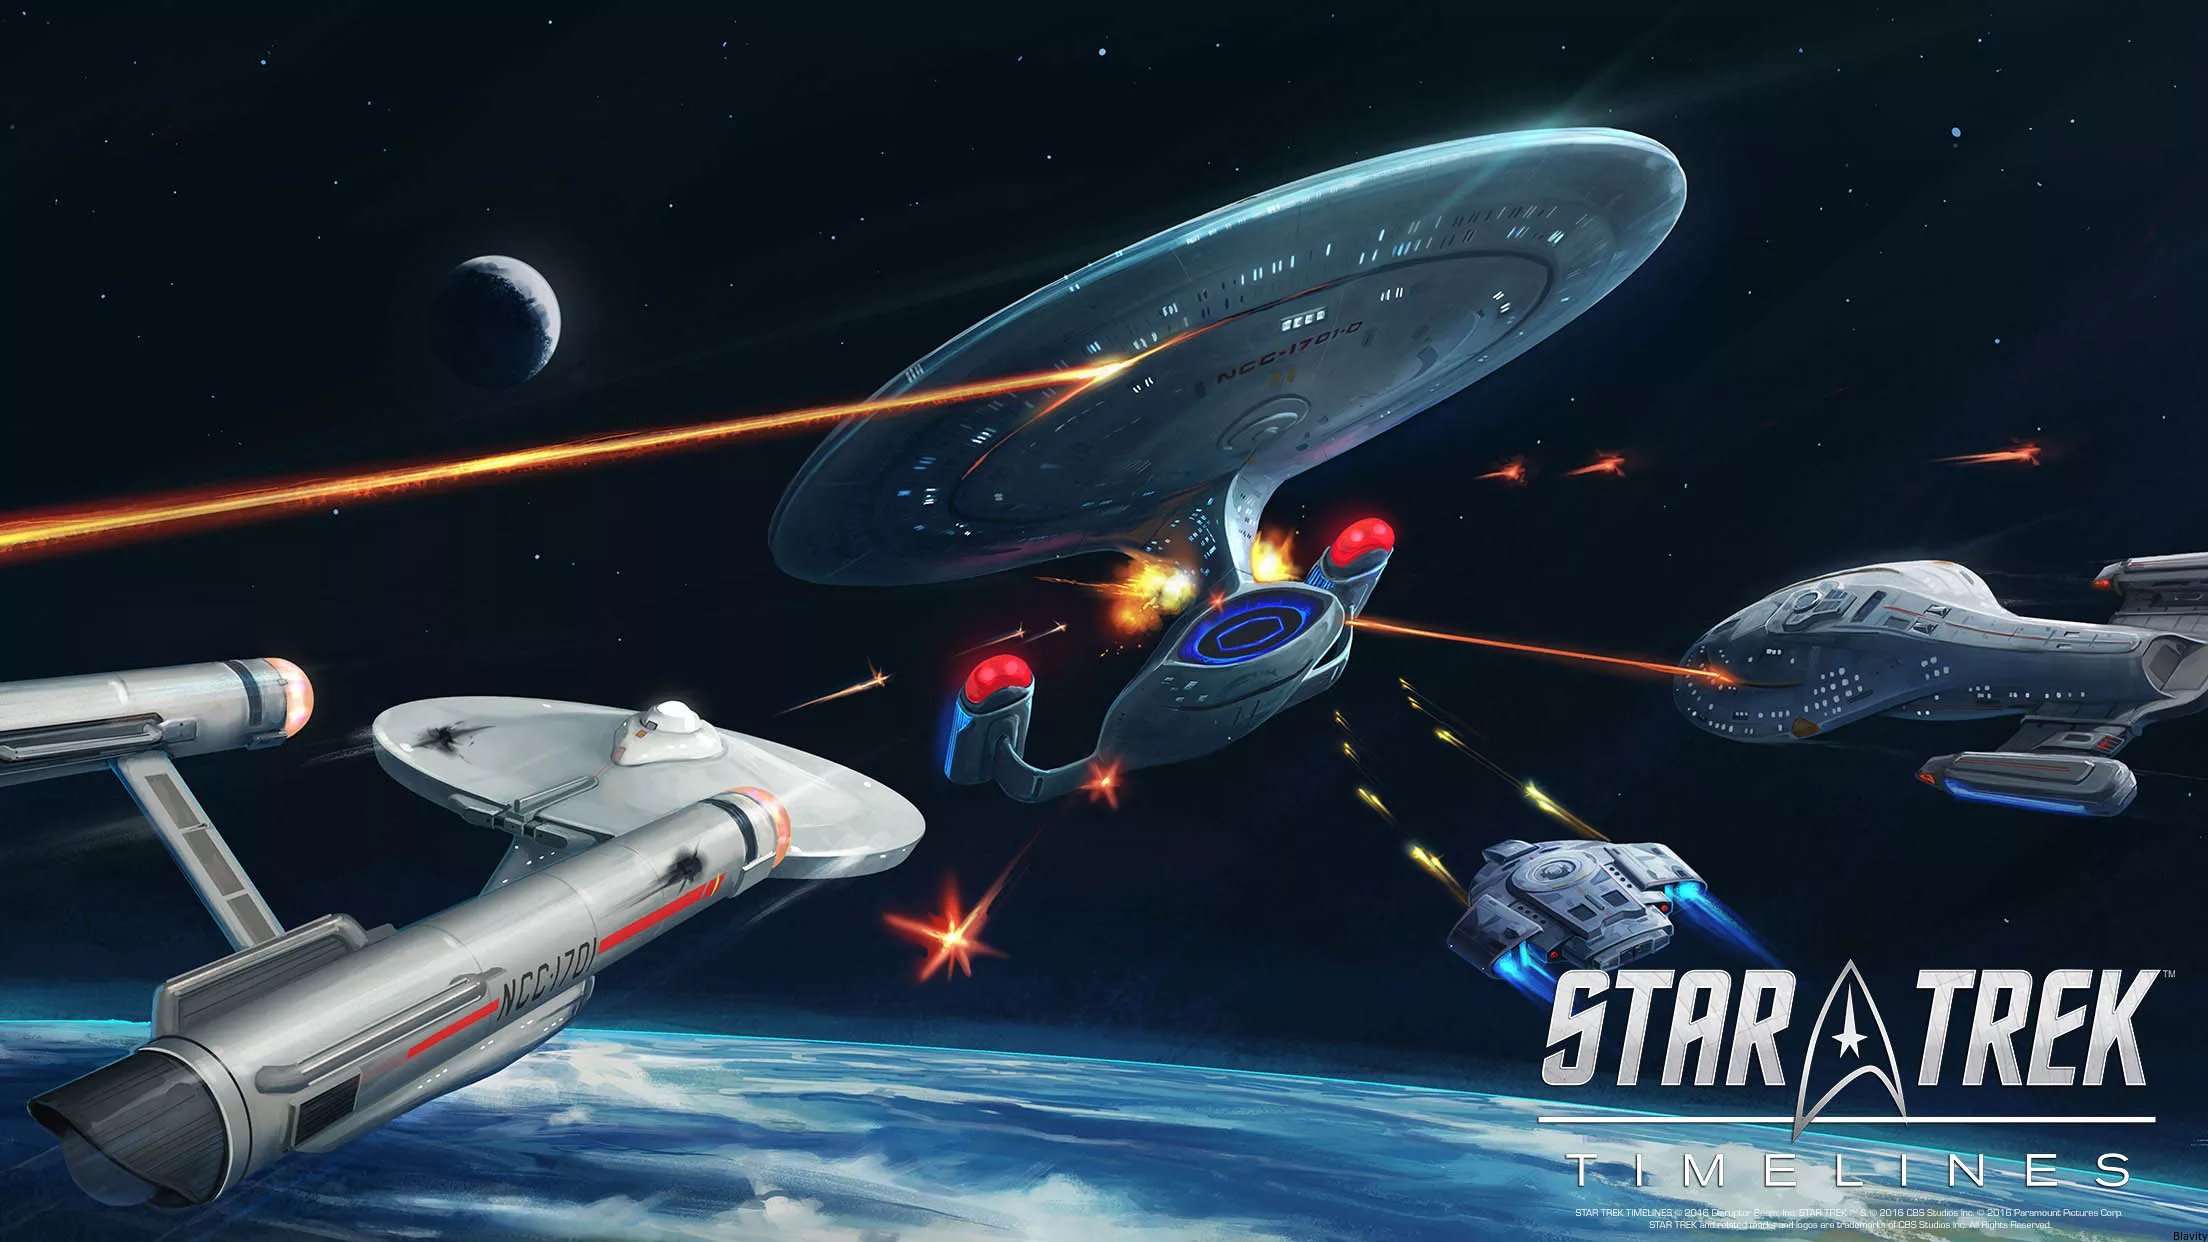 Star Trek Timelines Provides Strategy Fun For All Star Trek fans